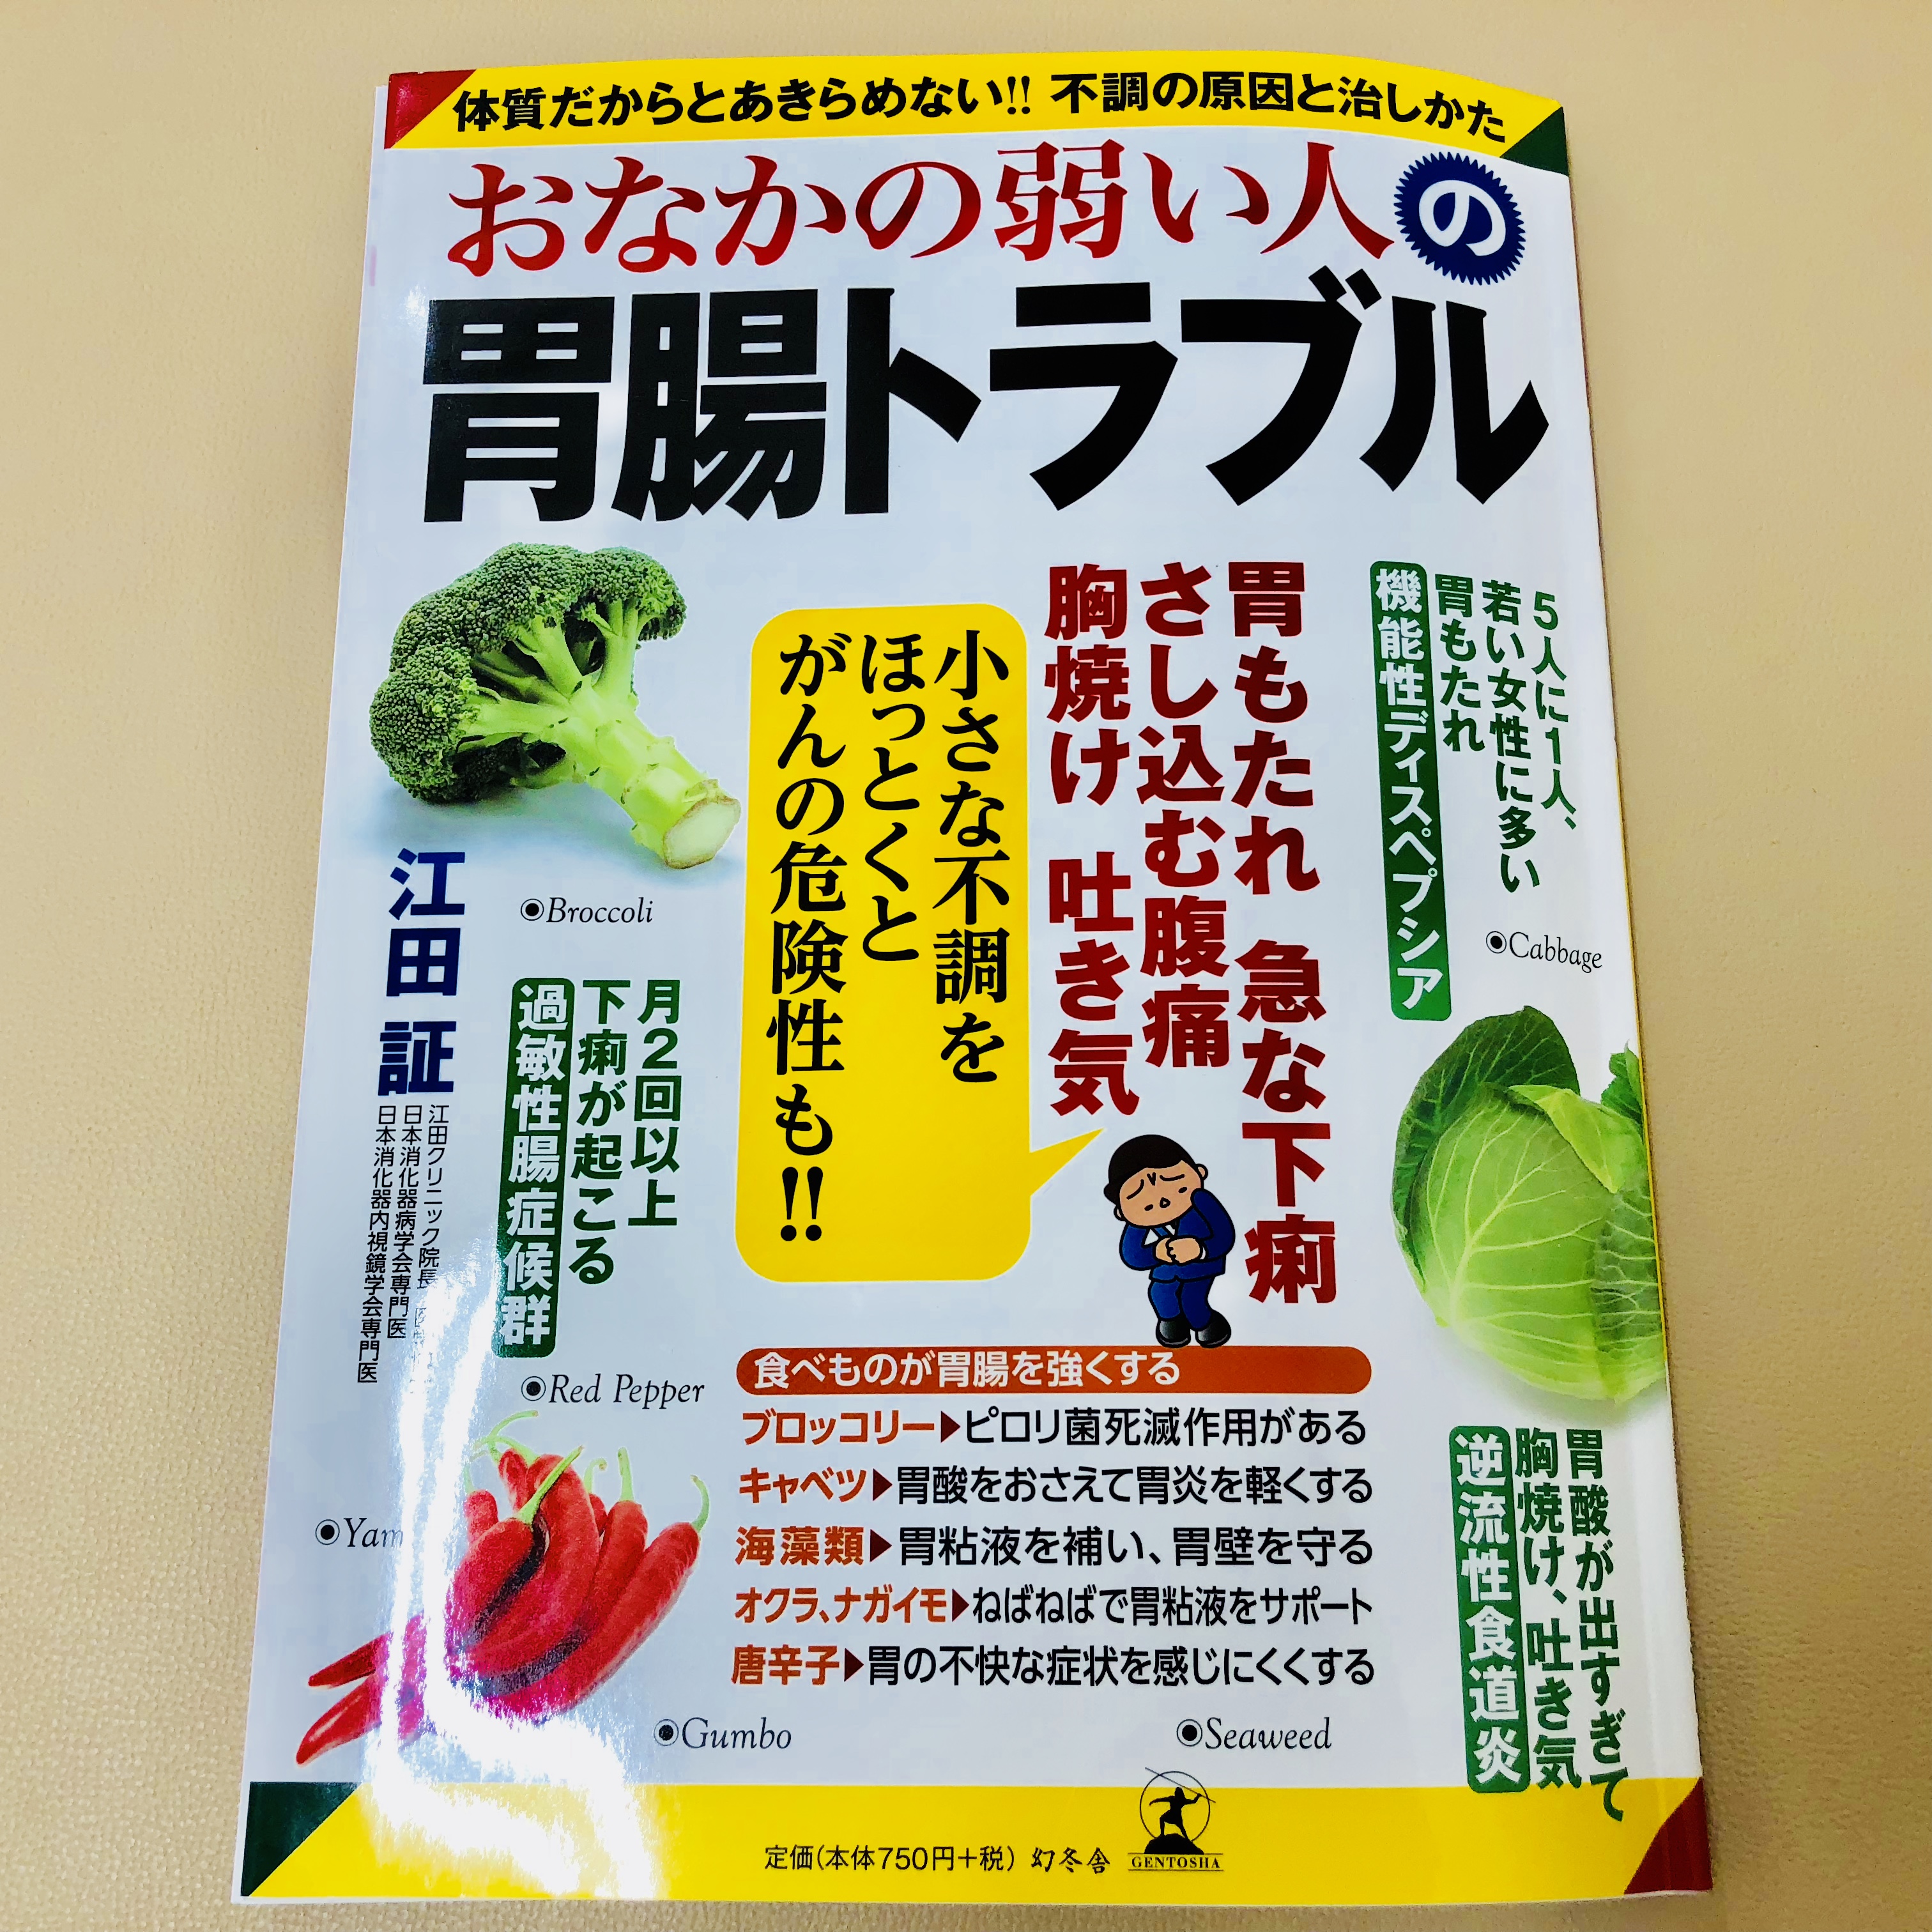 興味深い本を読みました 胃腸トラブルを改善する 福岡天神内視鏡クリニックブログ